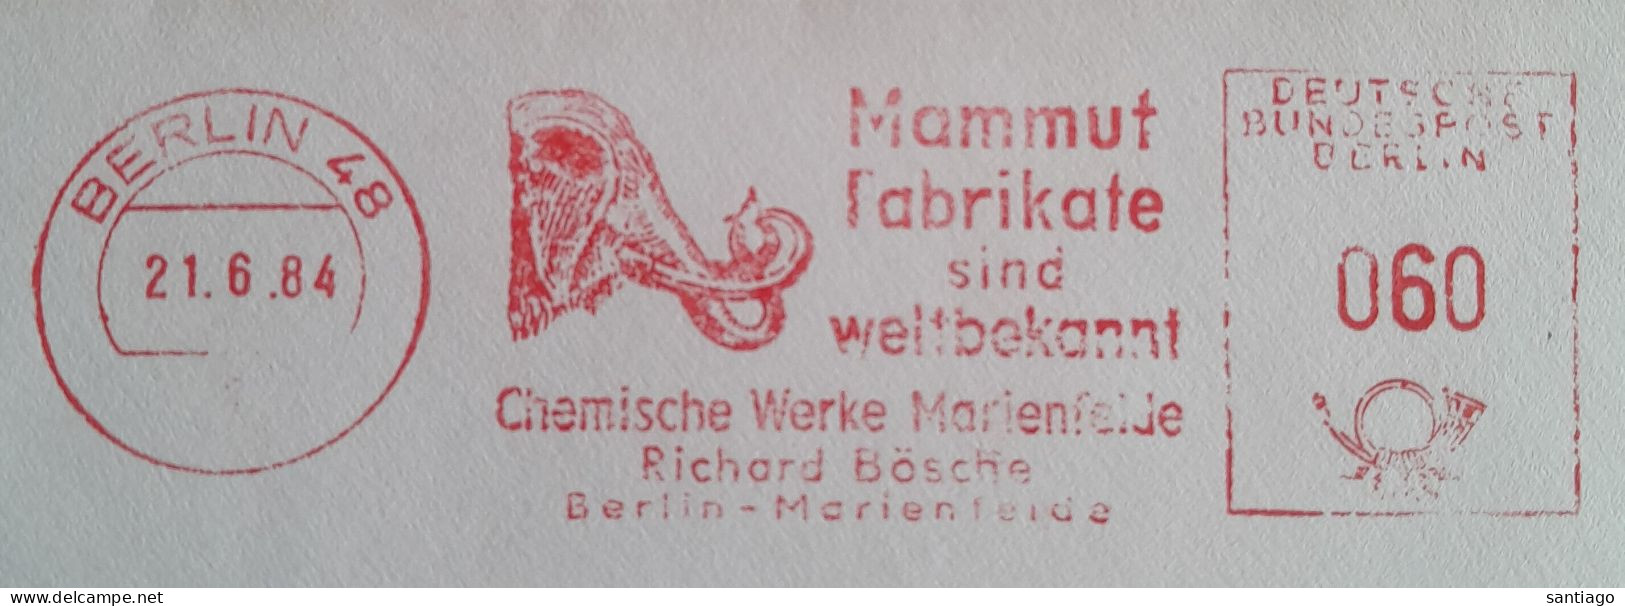 Duitsland Berlin 48 Mechanische Frankering / Mammut - Mammoet Fabrikate Sind Wellbekannt - Ongebruikt